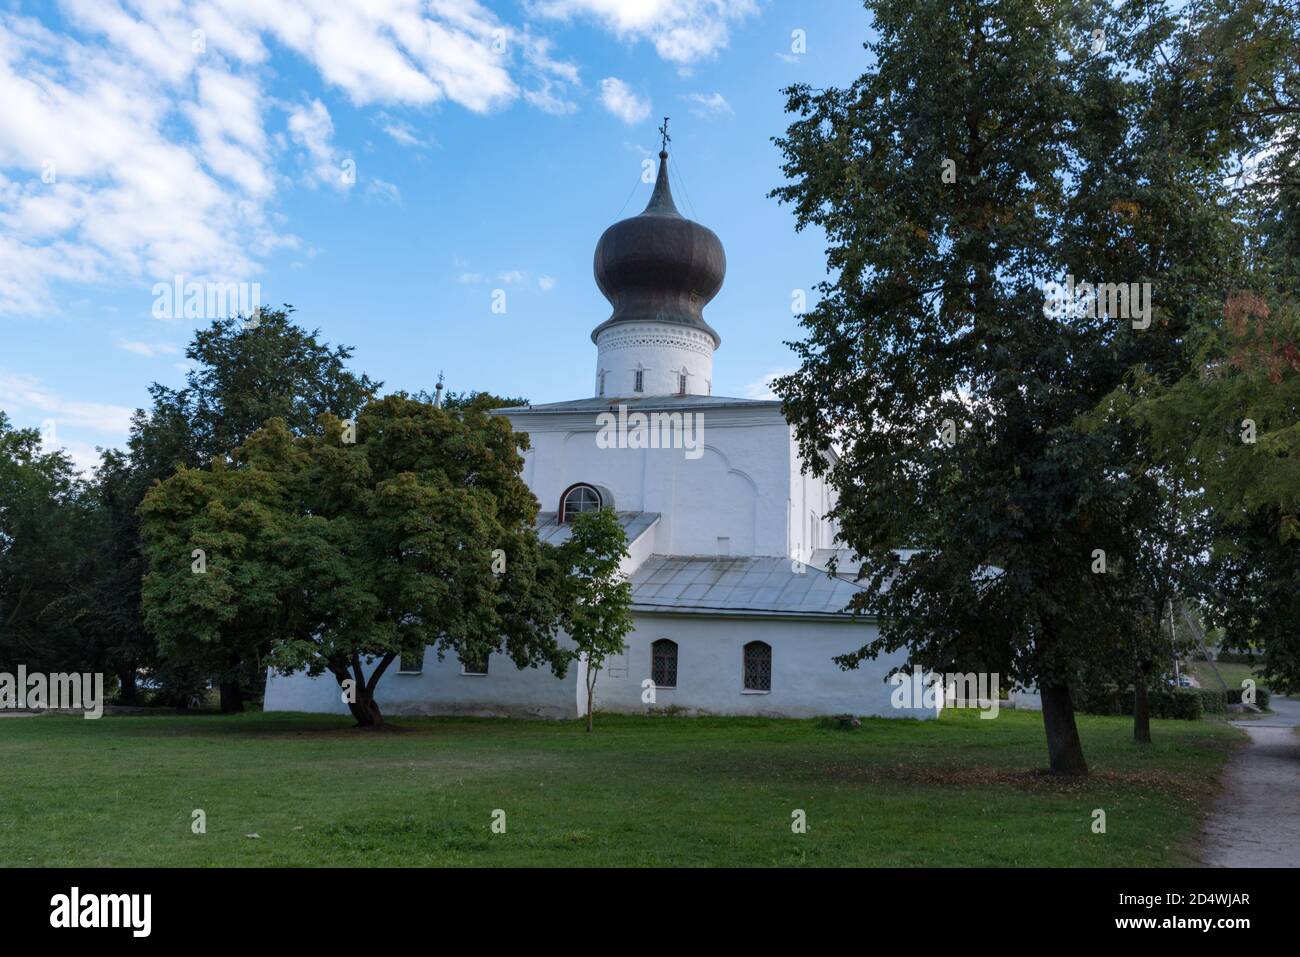 Assumption church from Paromenya (Uspenskaya church, XVI century) and its bell tower. Pskov city, Pskov Region (Pskovskaya oblast), Russia. Stock Photo